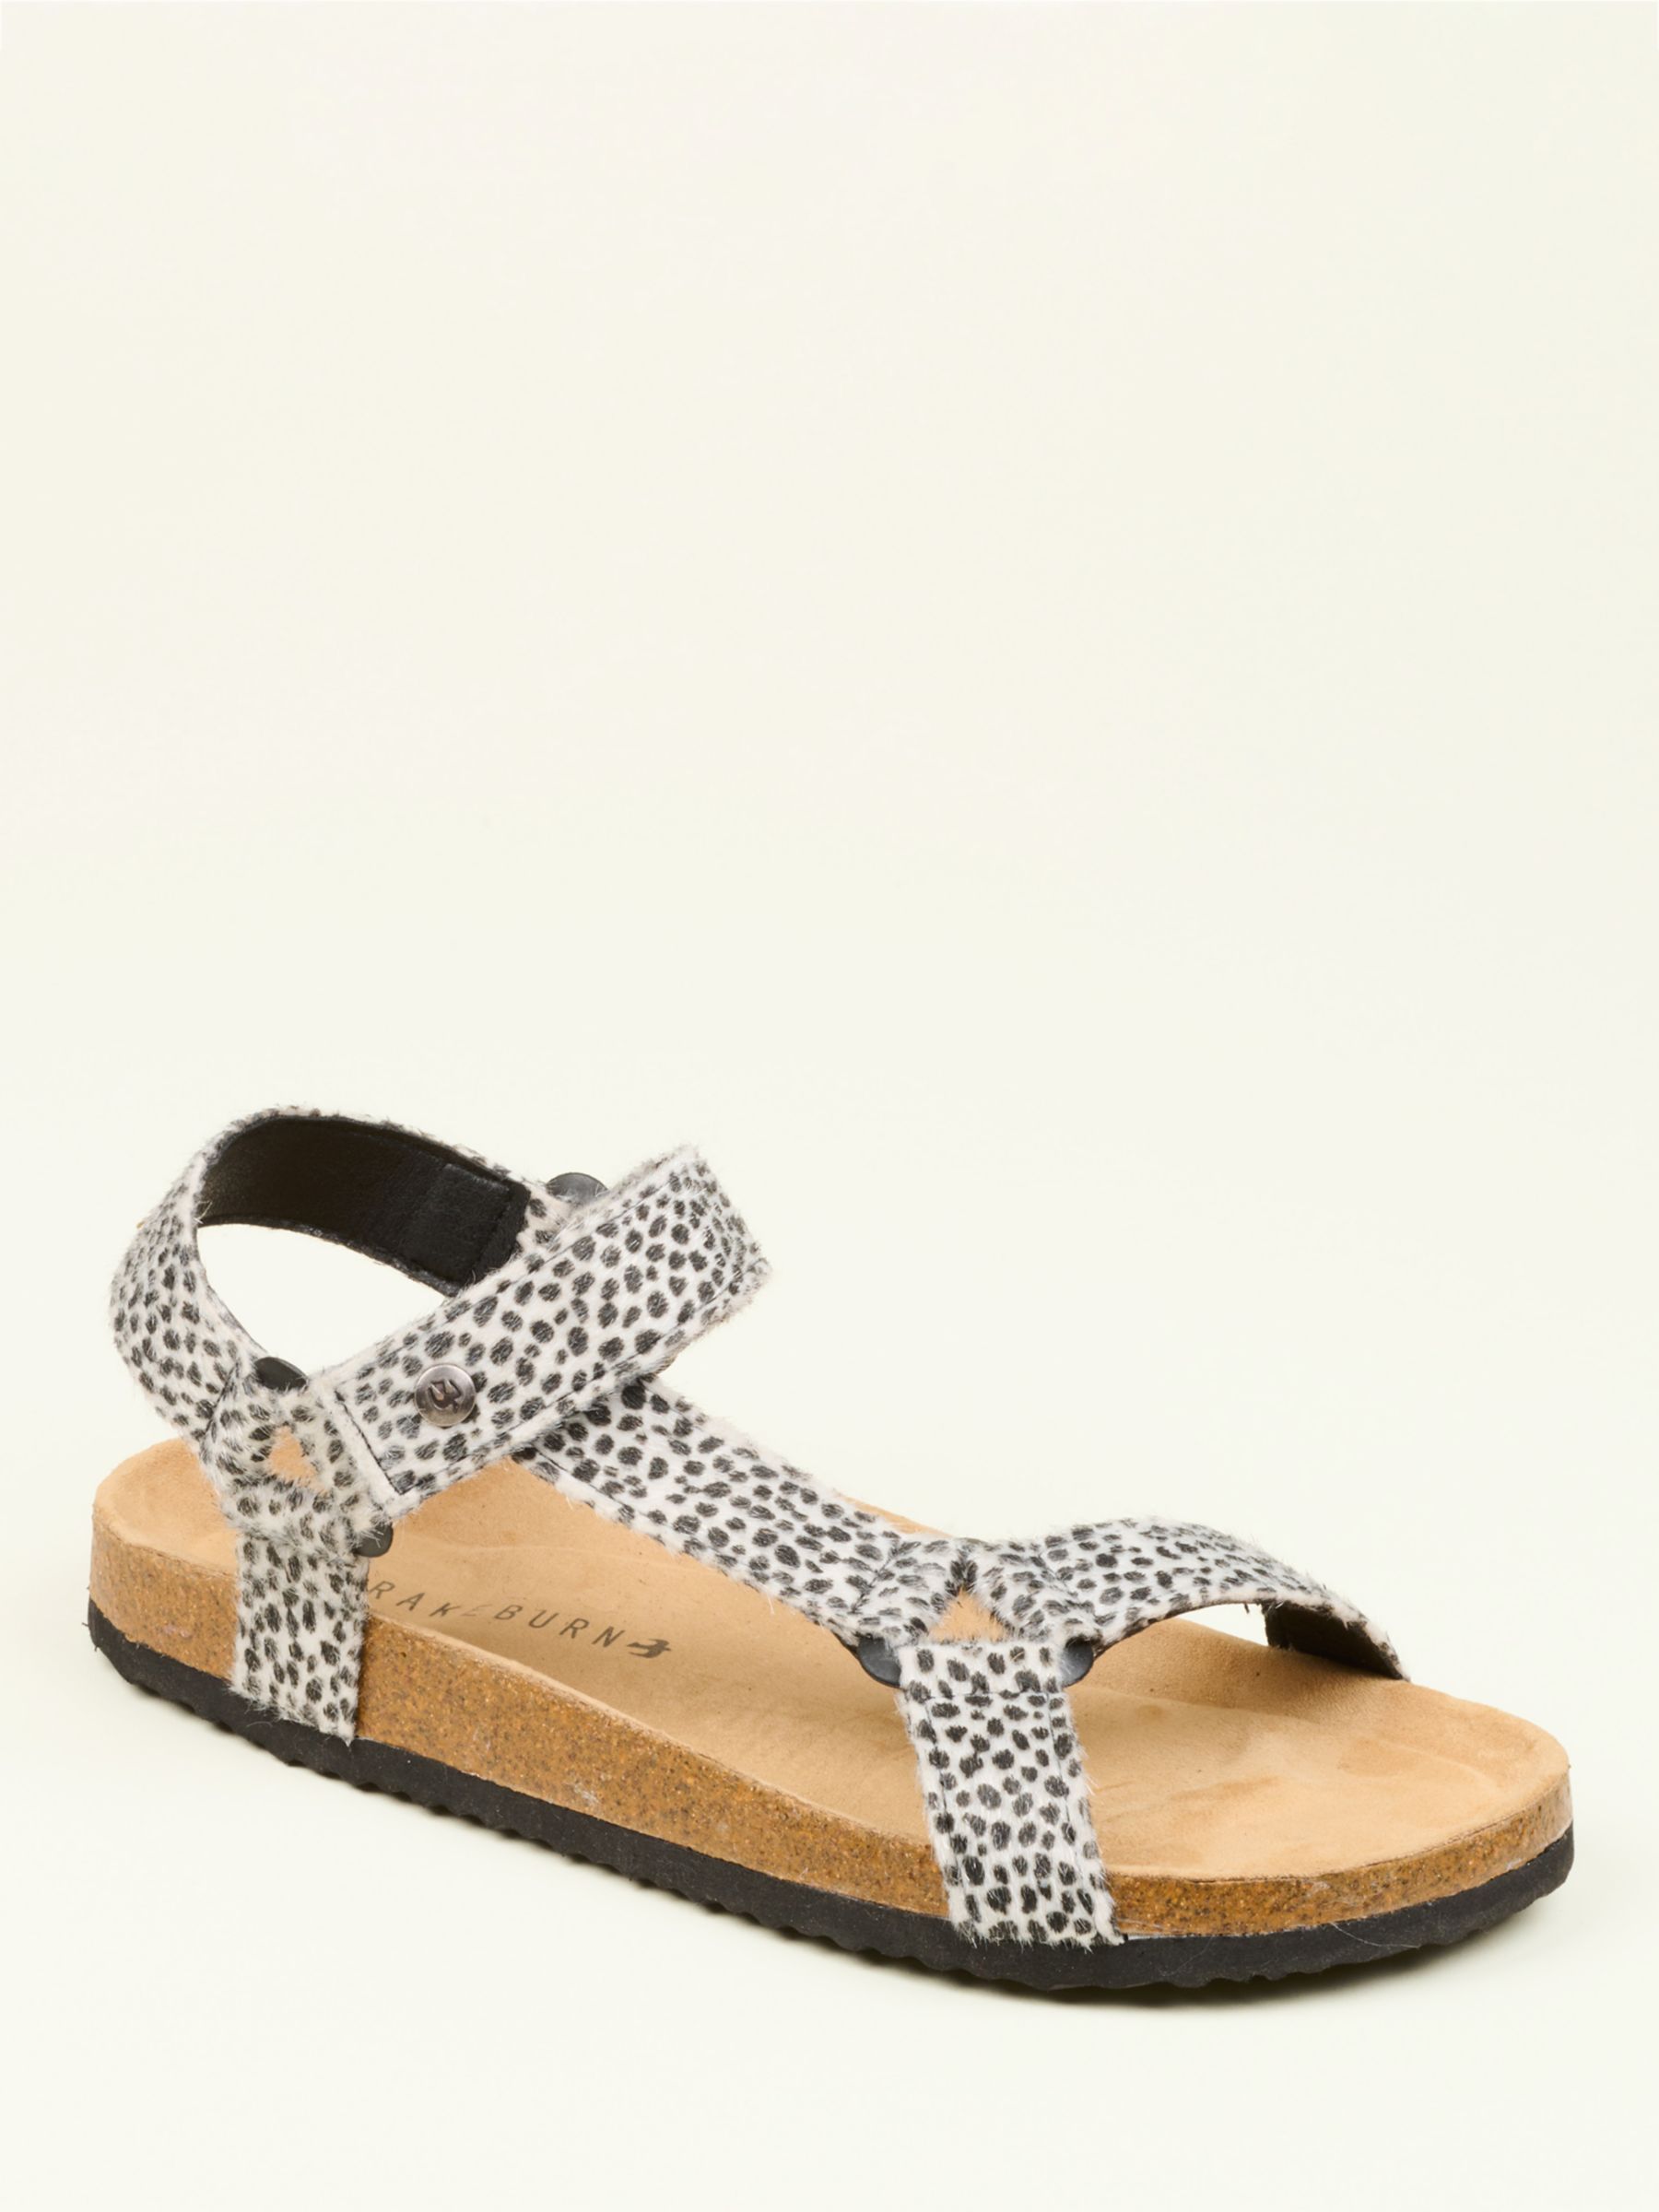 Buy Brakeburn Leopard Strap Sandals, Multi Online at johnlewis.com